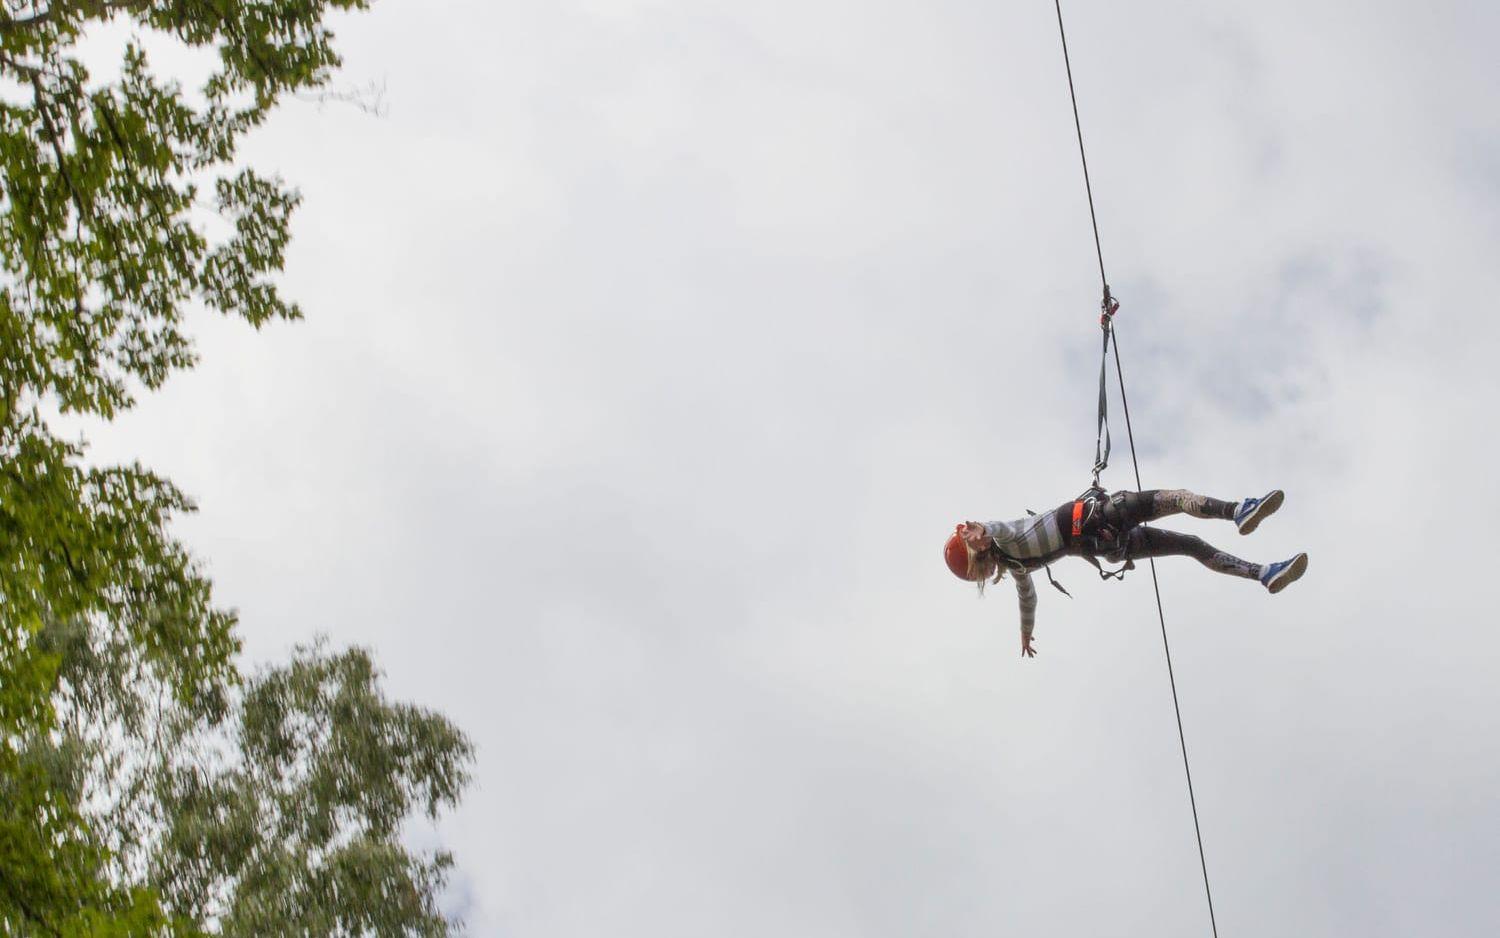 Testade ziplina. Isabelle Palmgren testade känslan av att hänga nästan fritt i luften. Kungsbyggets äventyrspark drog rekordpublik. Bild: Carina NIlsson